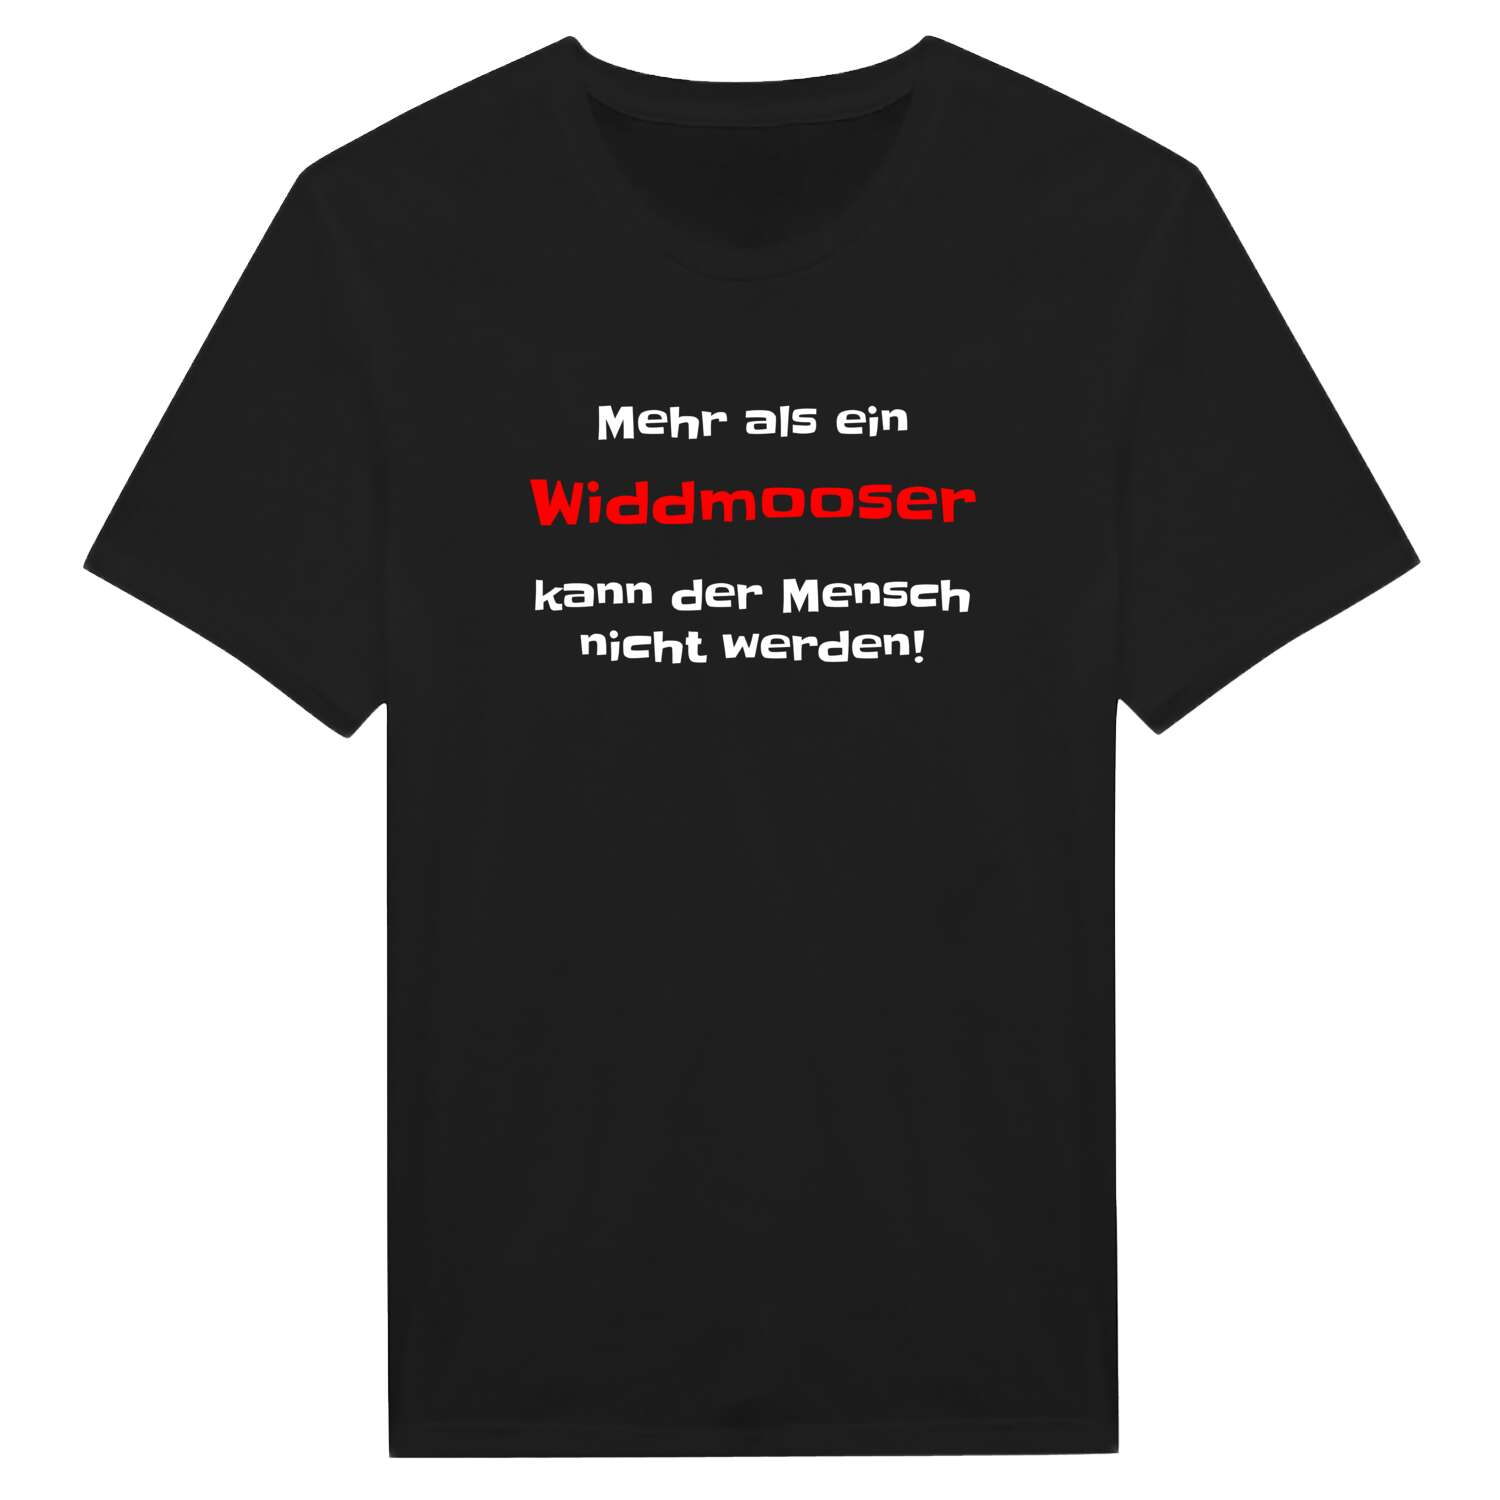 Widdmoos T-Shirt »Mehr als ein«